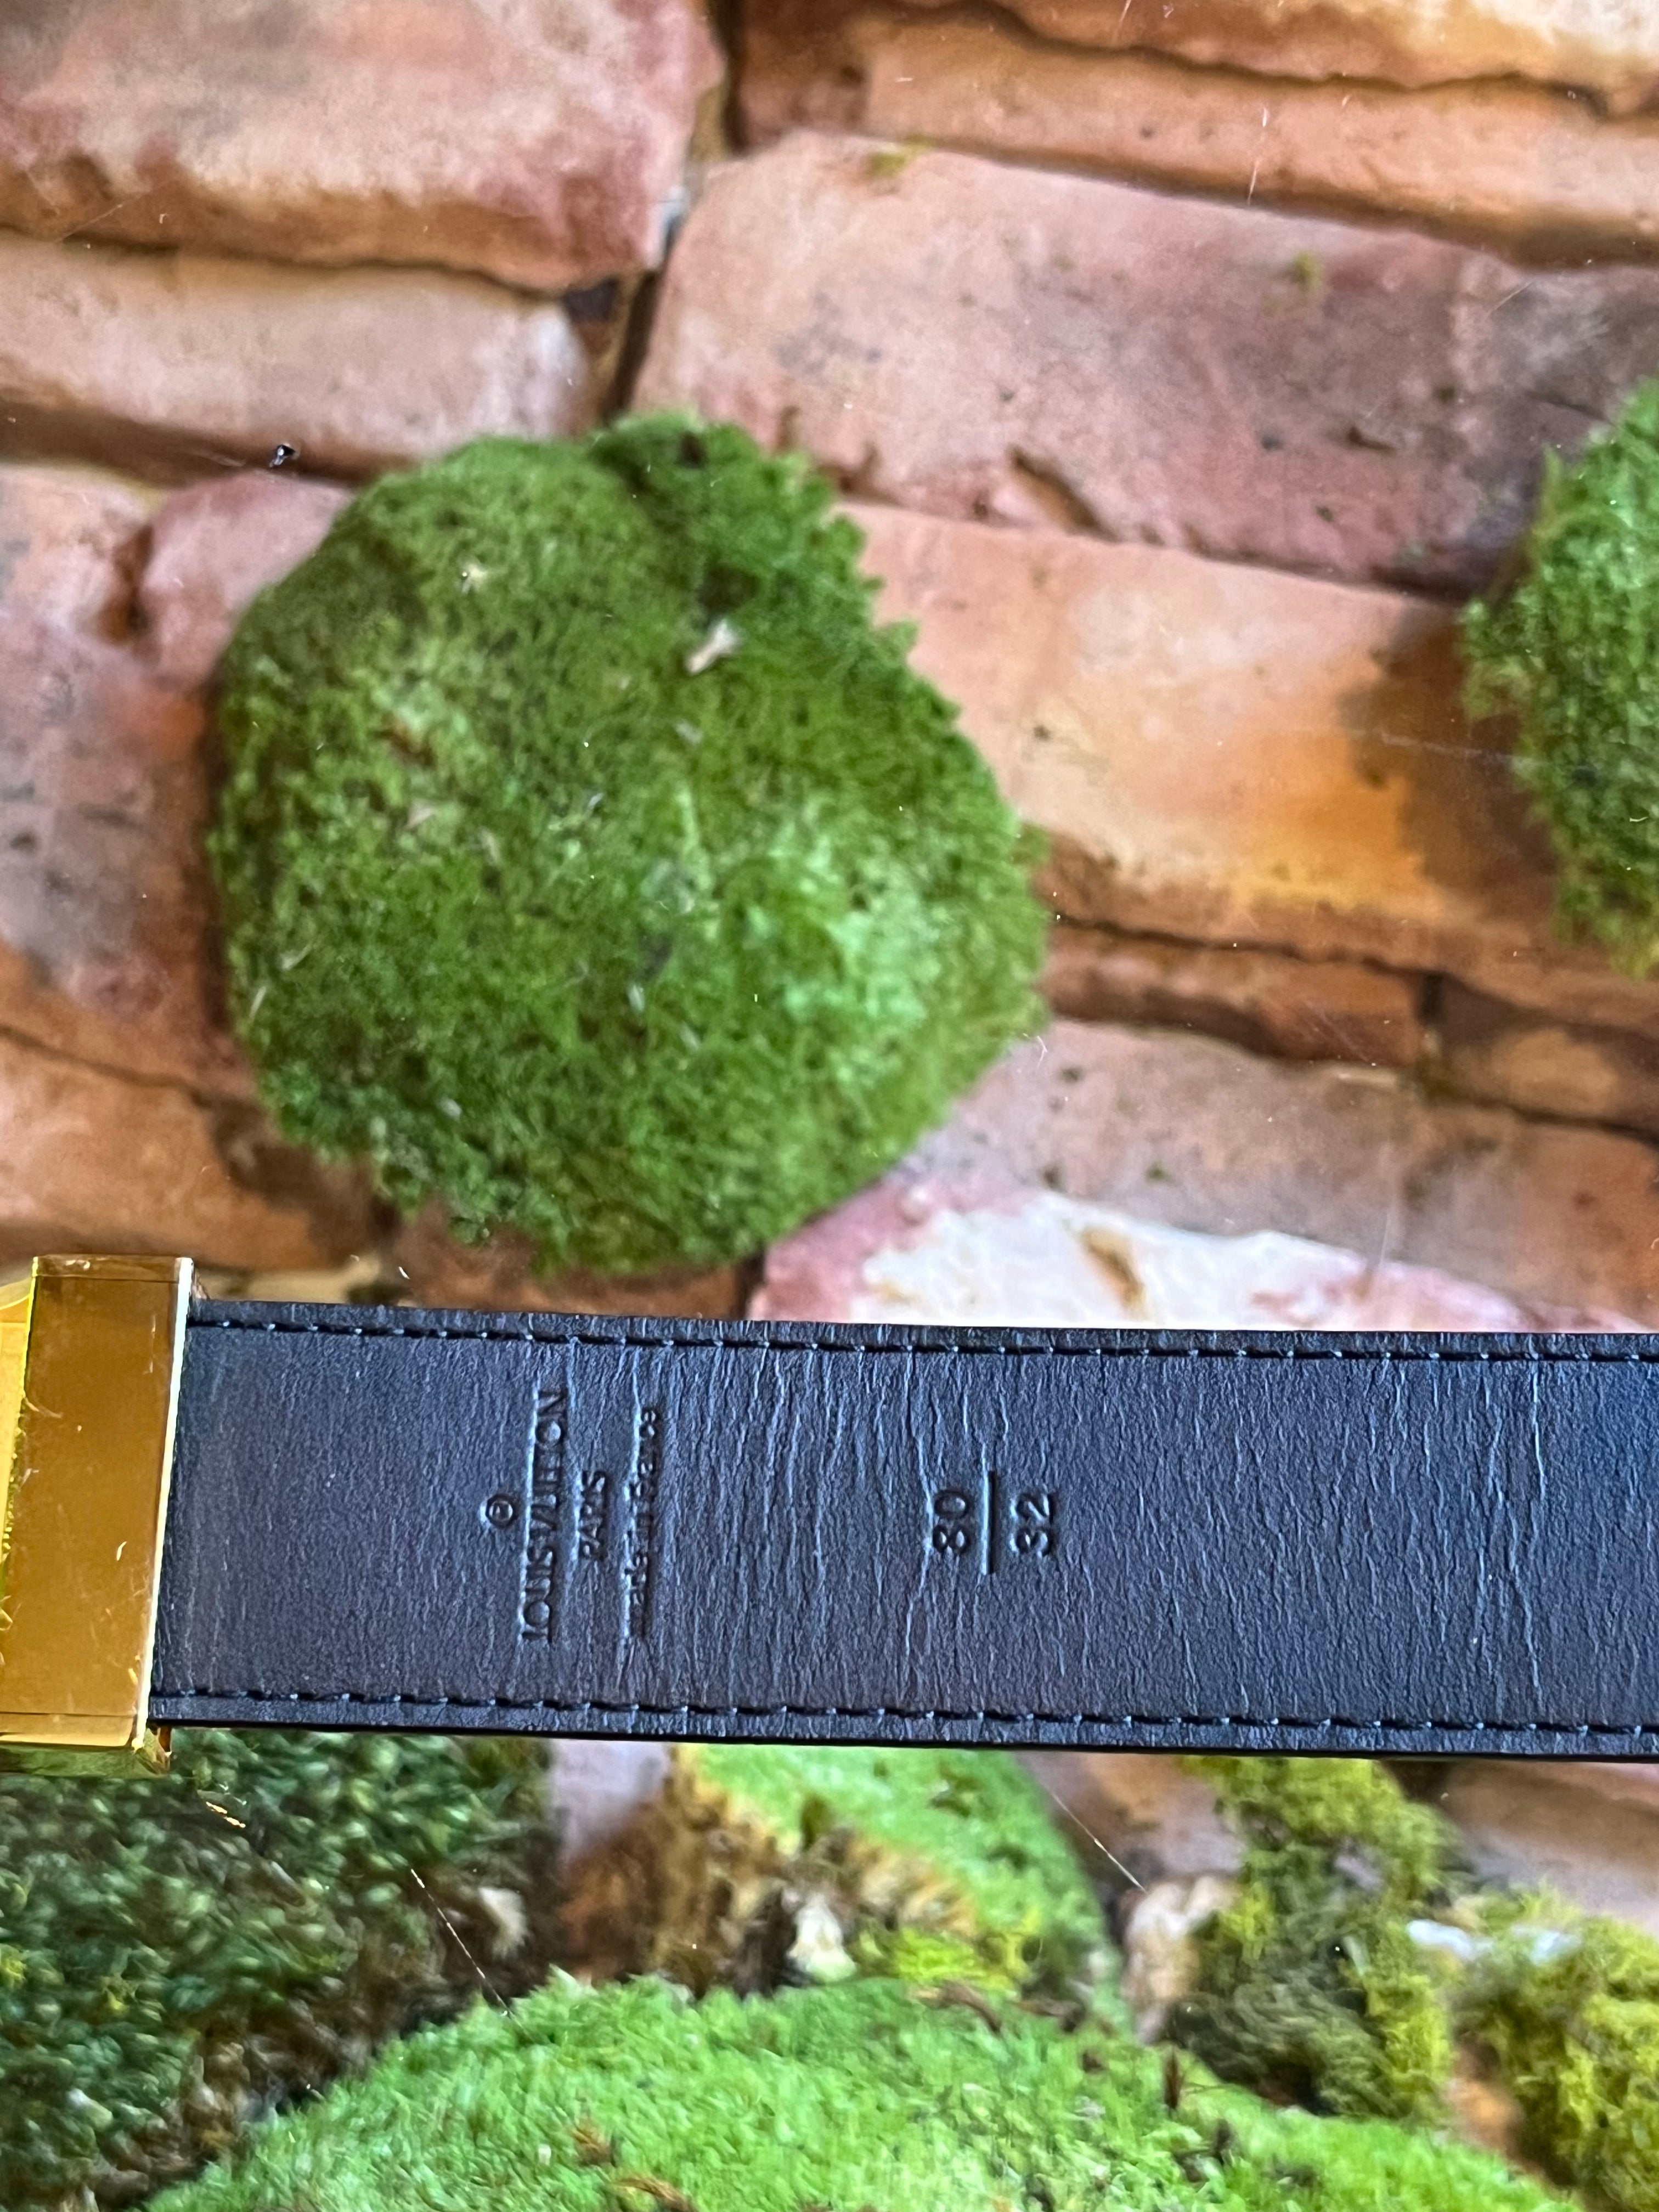 Louis Vuitton Vintage Monogram Belt Pull Buckle (Size 80/32)